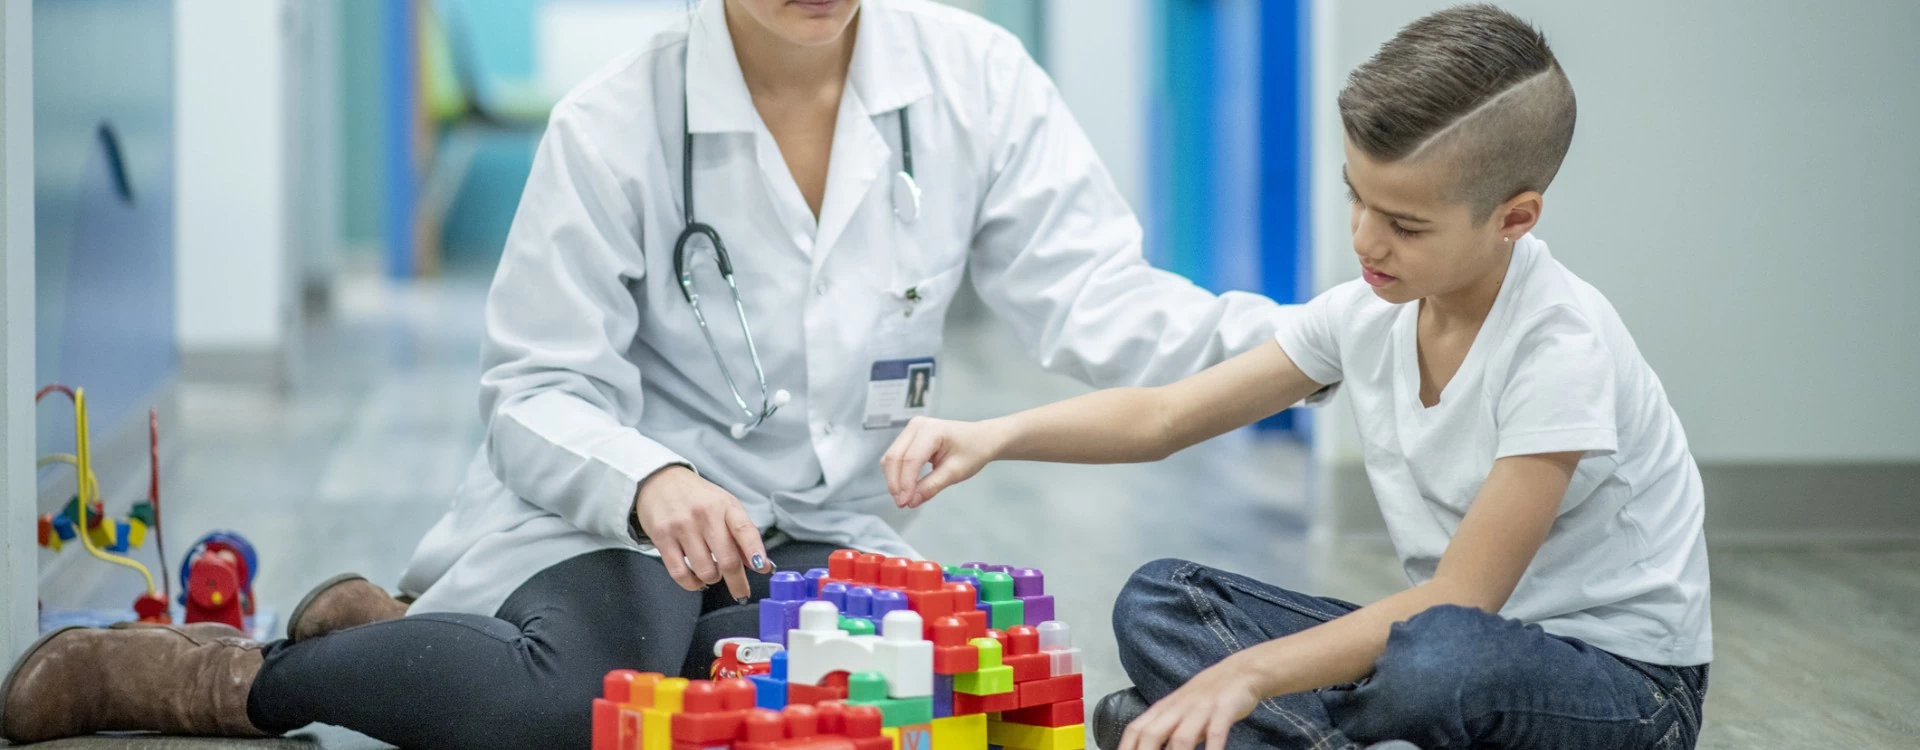 Dziecko bawiące się klockami przy lekarce